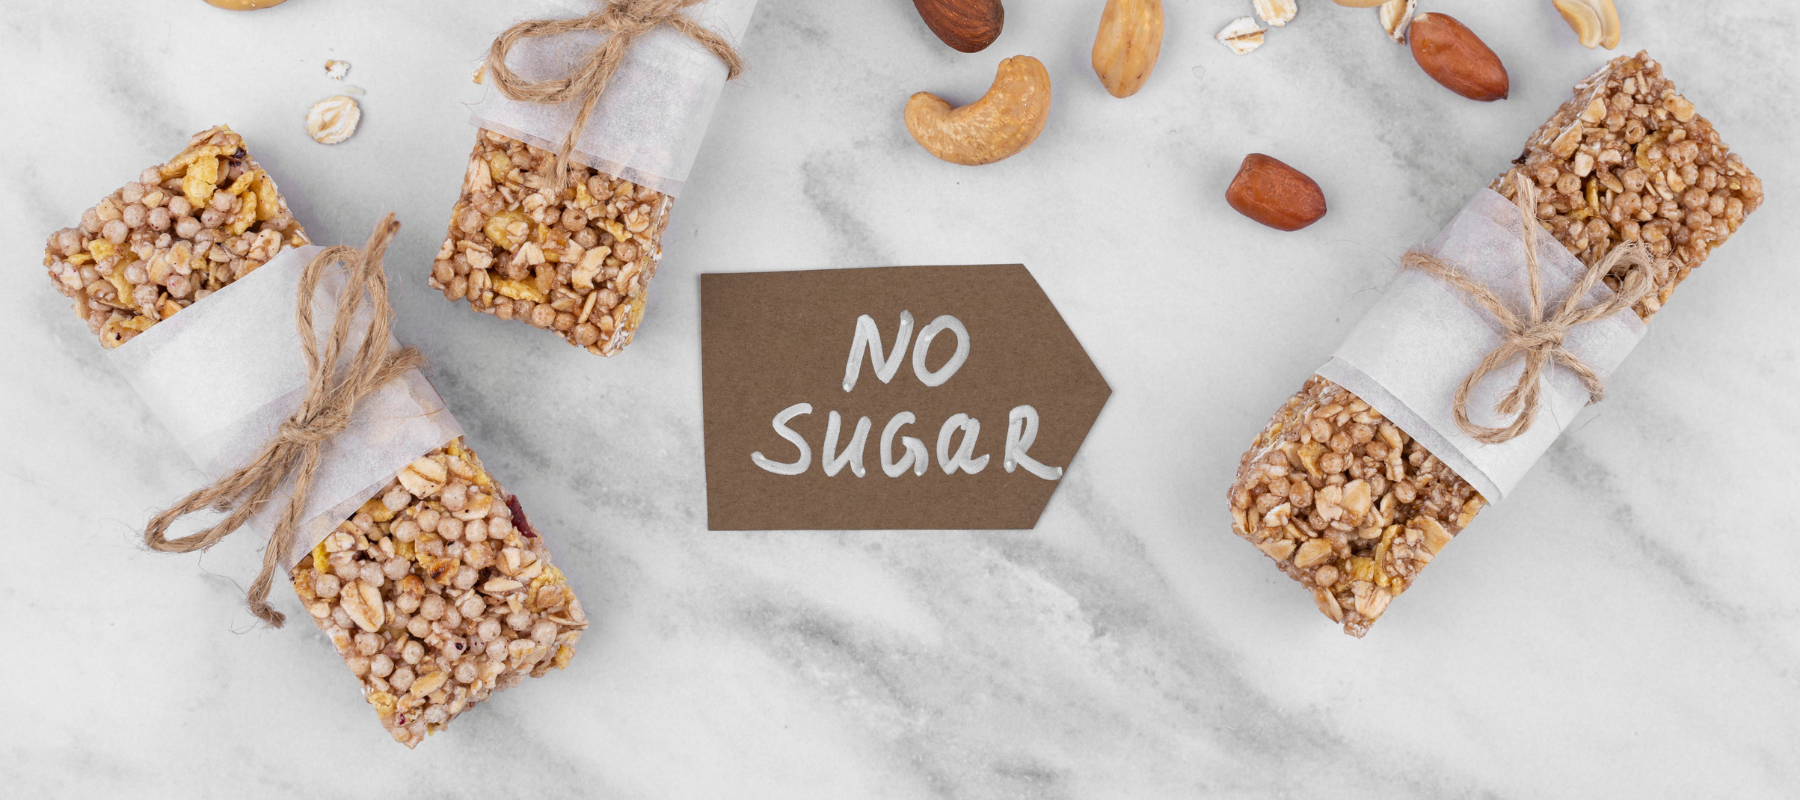 Zuckerfreie Ernährung – Sind zuckerfreie Lebensmittel gesünder?